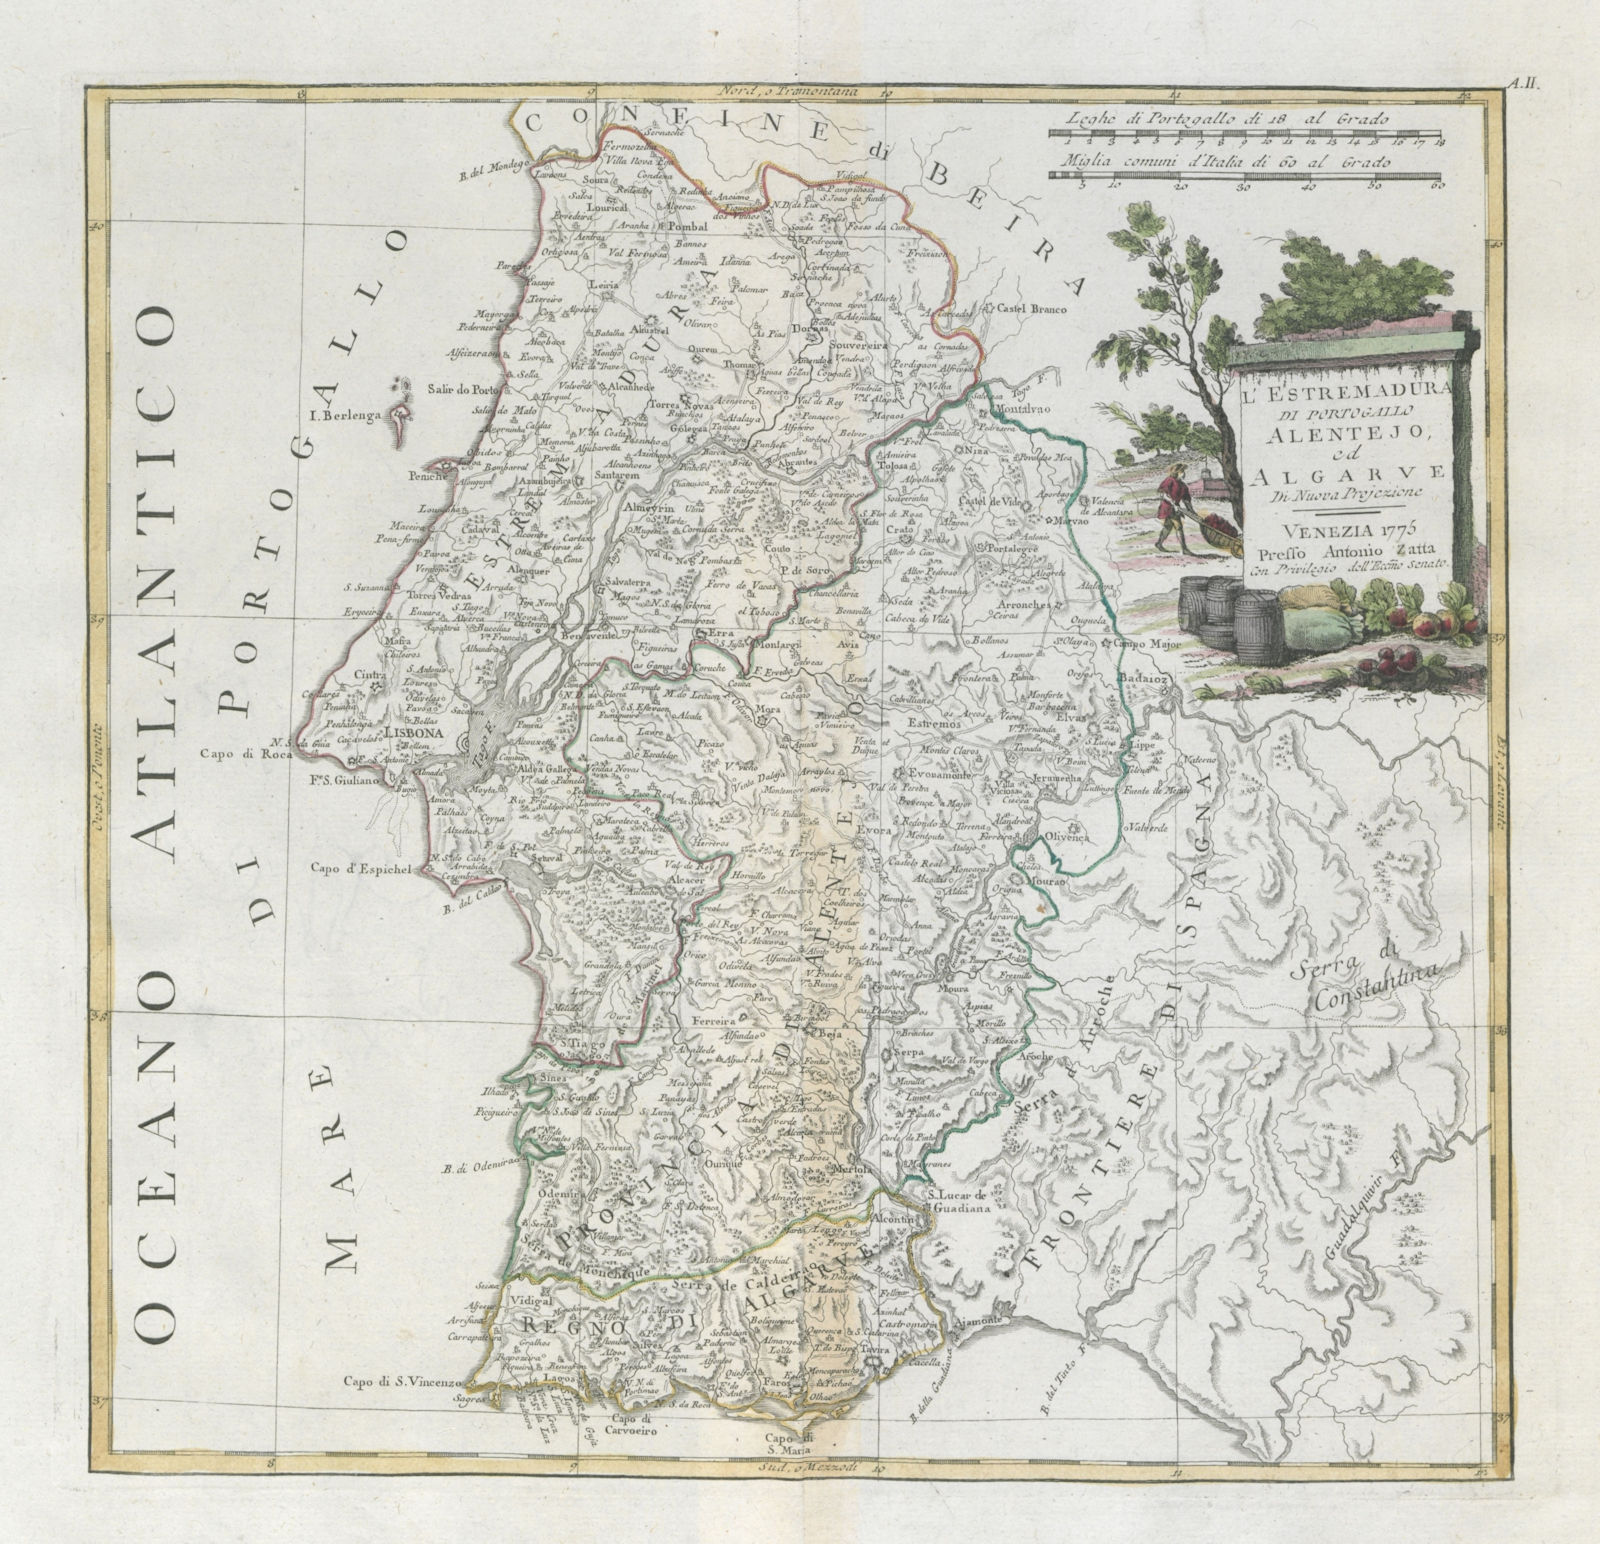 "L'Estremadura di Portogallo, Allentejo, Algarve" Portugal South. ZATTA 1779 map